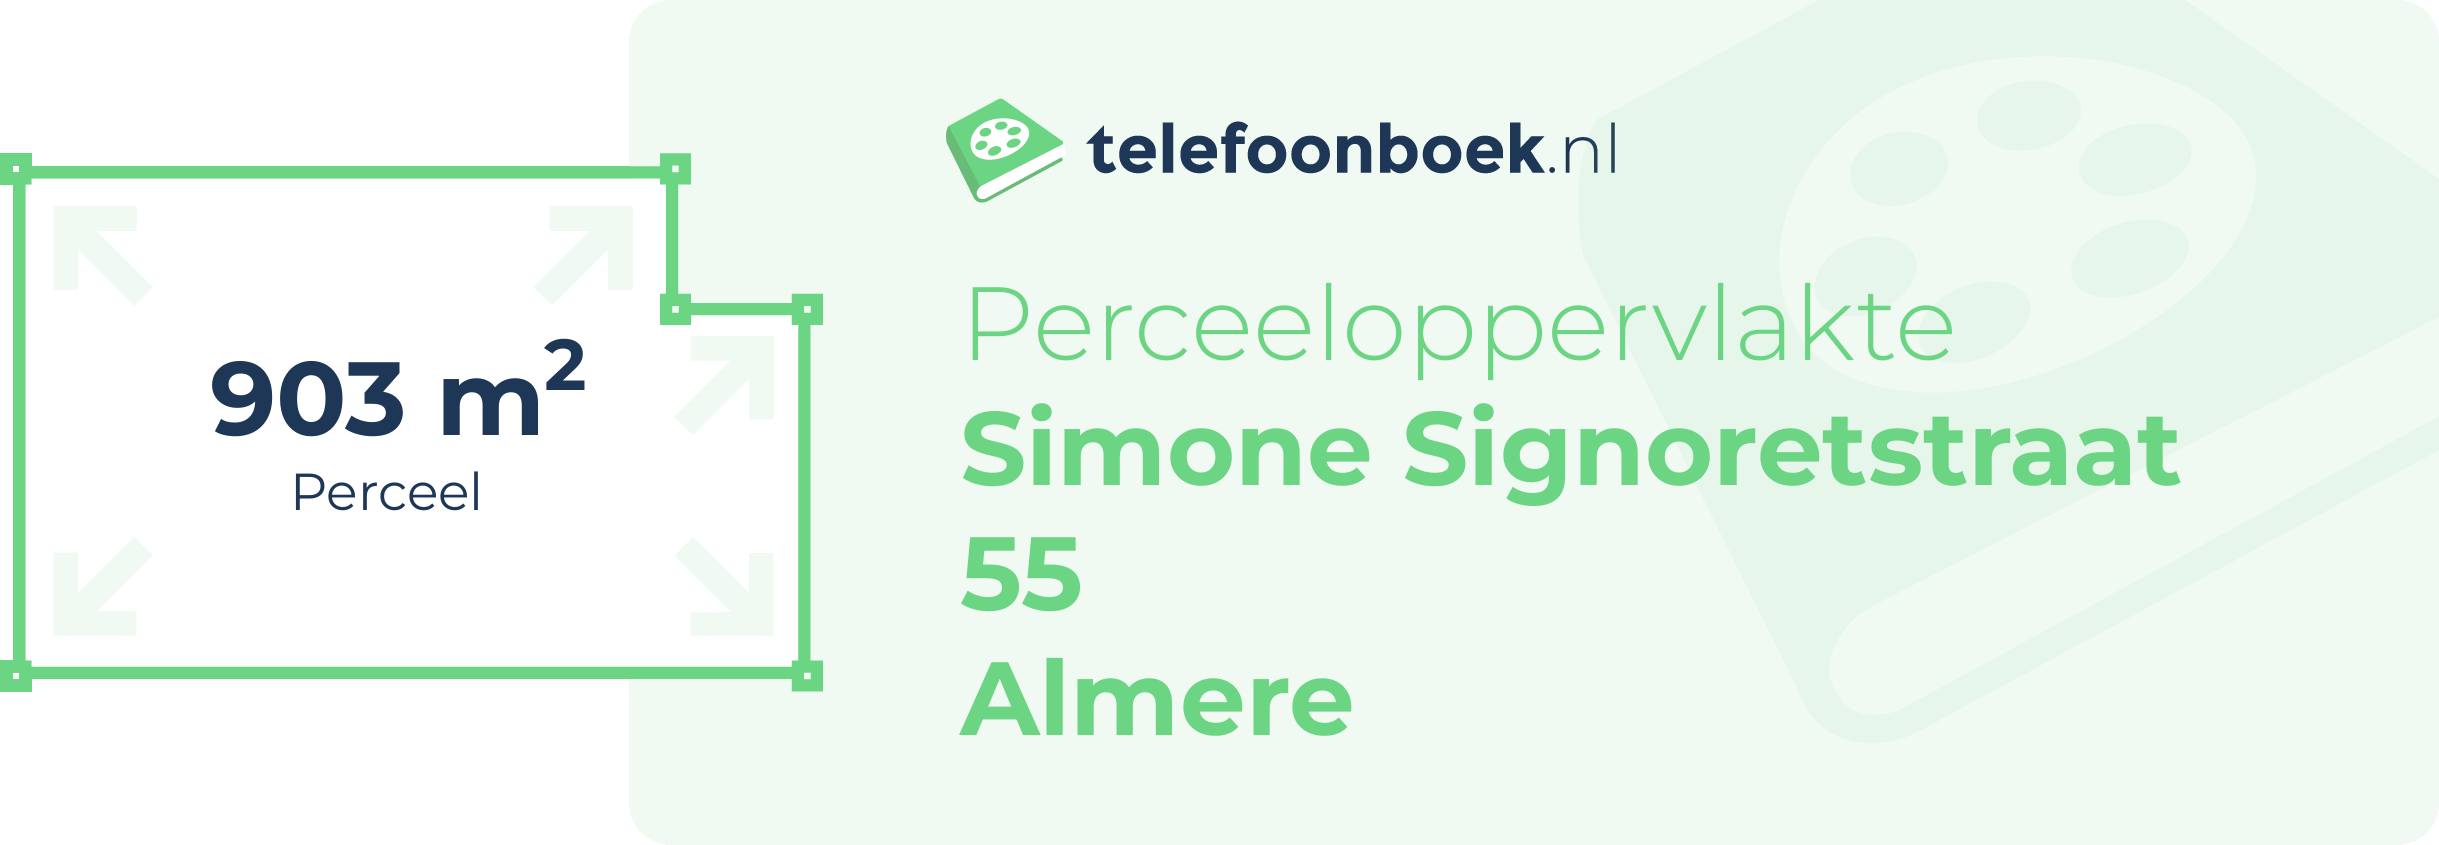 Perceeloppervlakte Simone Signoretstraat 55 Almere